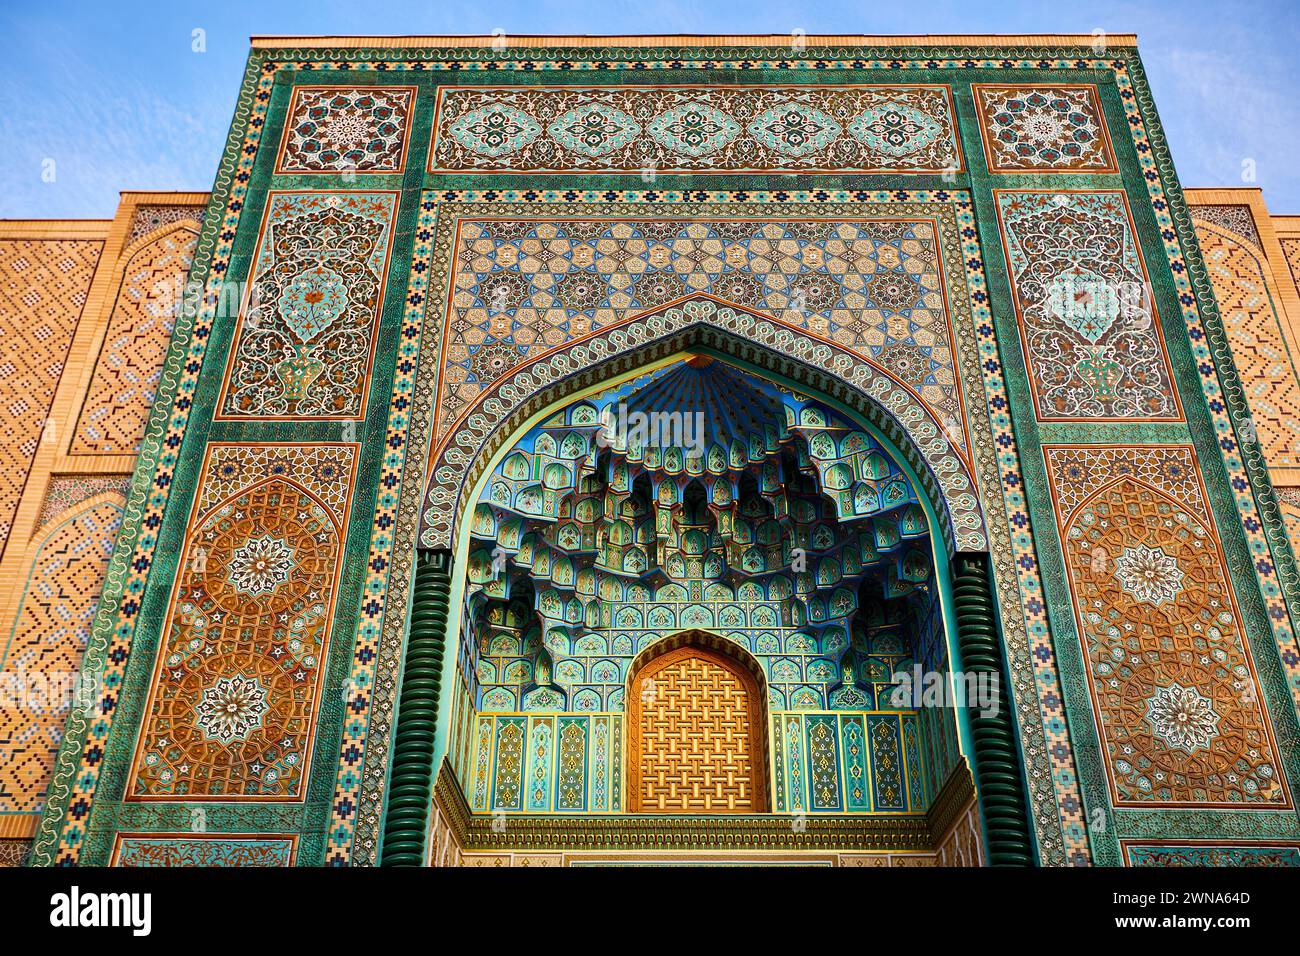 Fassade mit Mosaik und Bogentor der Moschee in Samarkand Ewiger Stadt Boqiy Shahar Registan Komplex in Usbekistan. Stockfoto